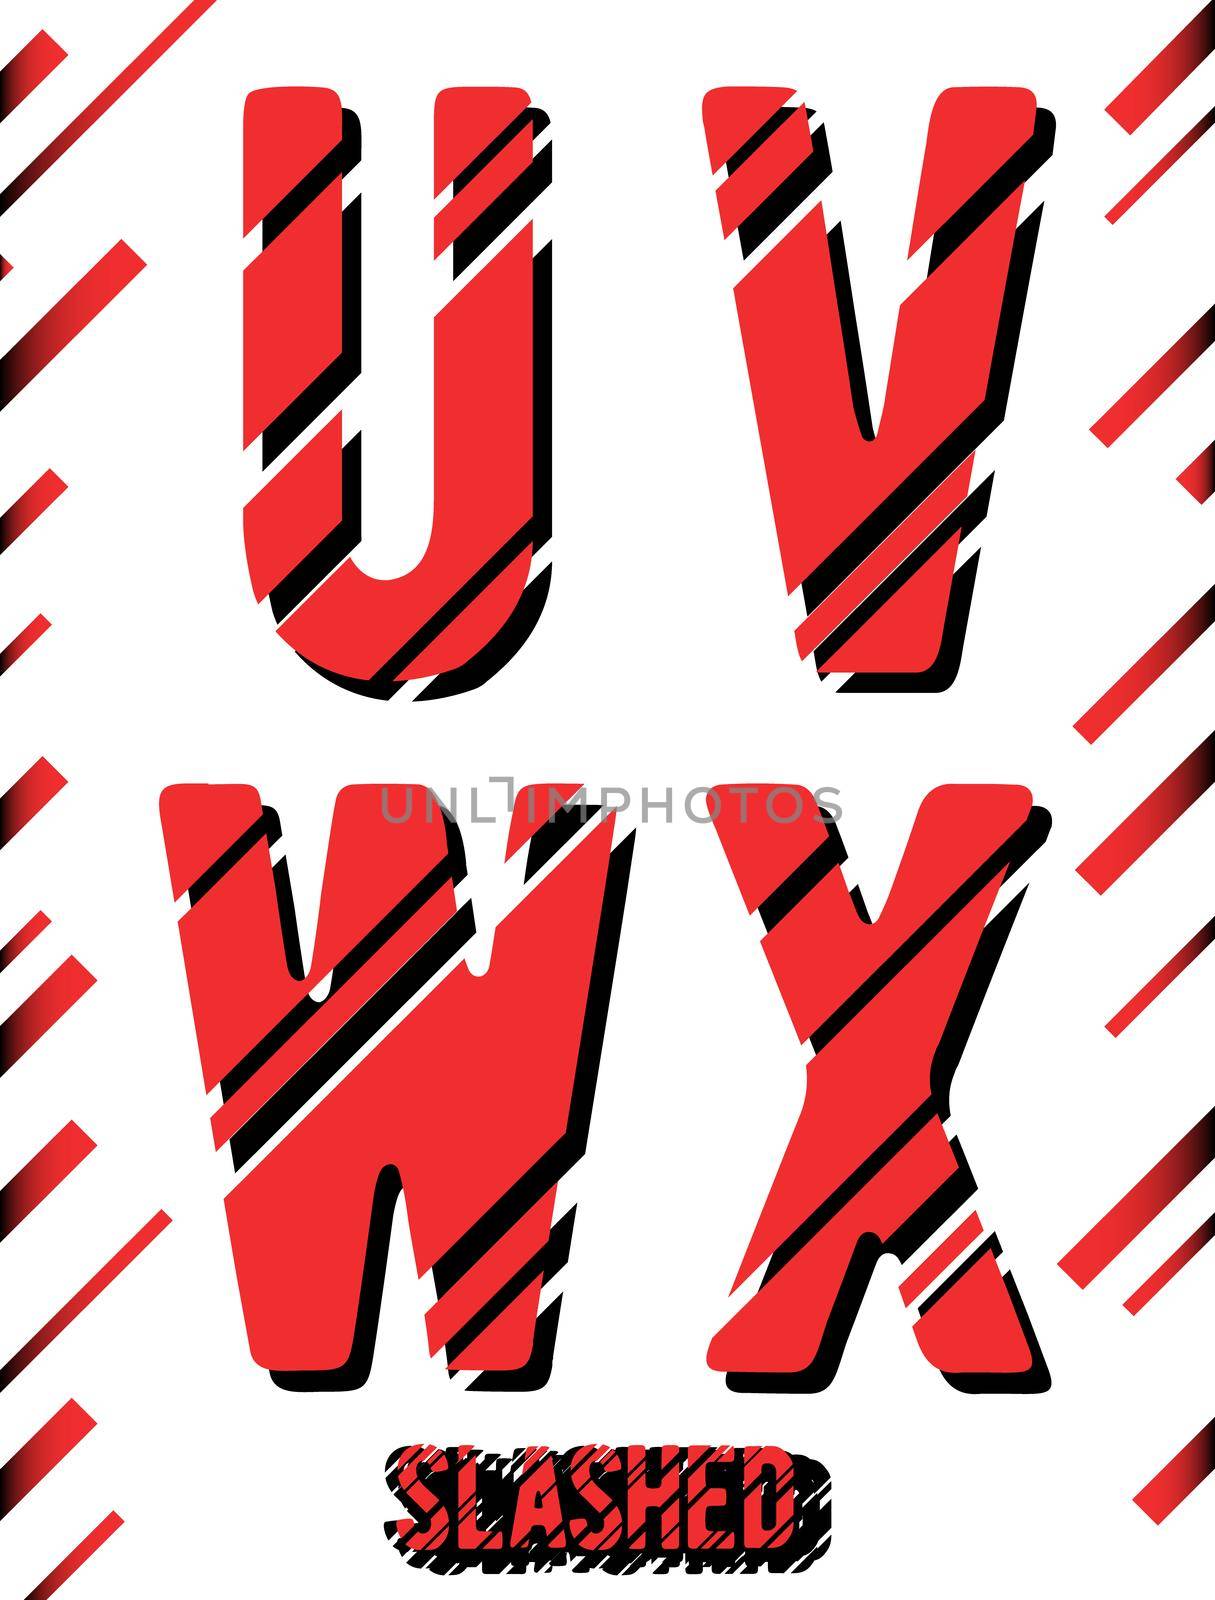 Alphabet font template. Set of letters U, V, W, X logo or icon. Slashed design. Vector illustration.